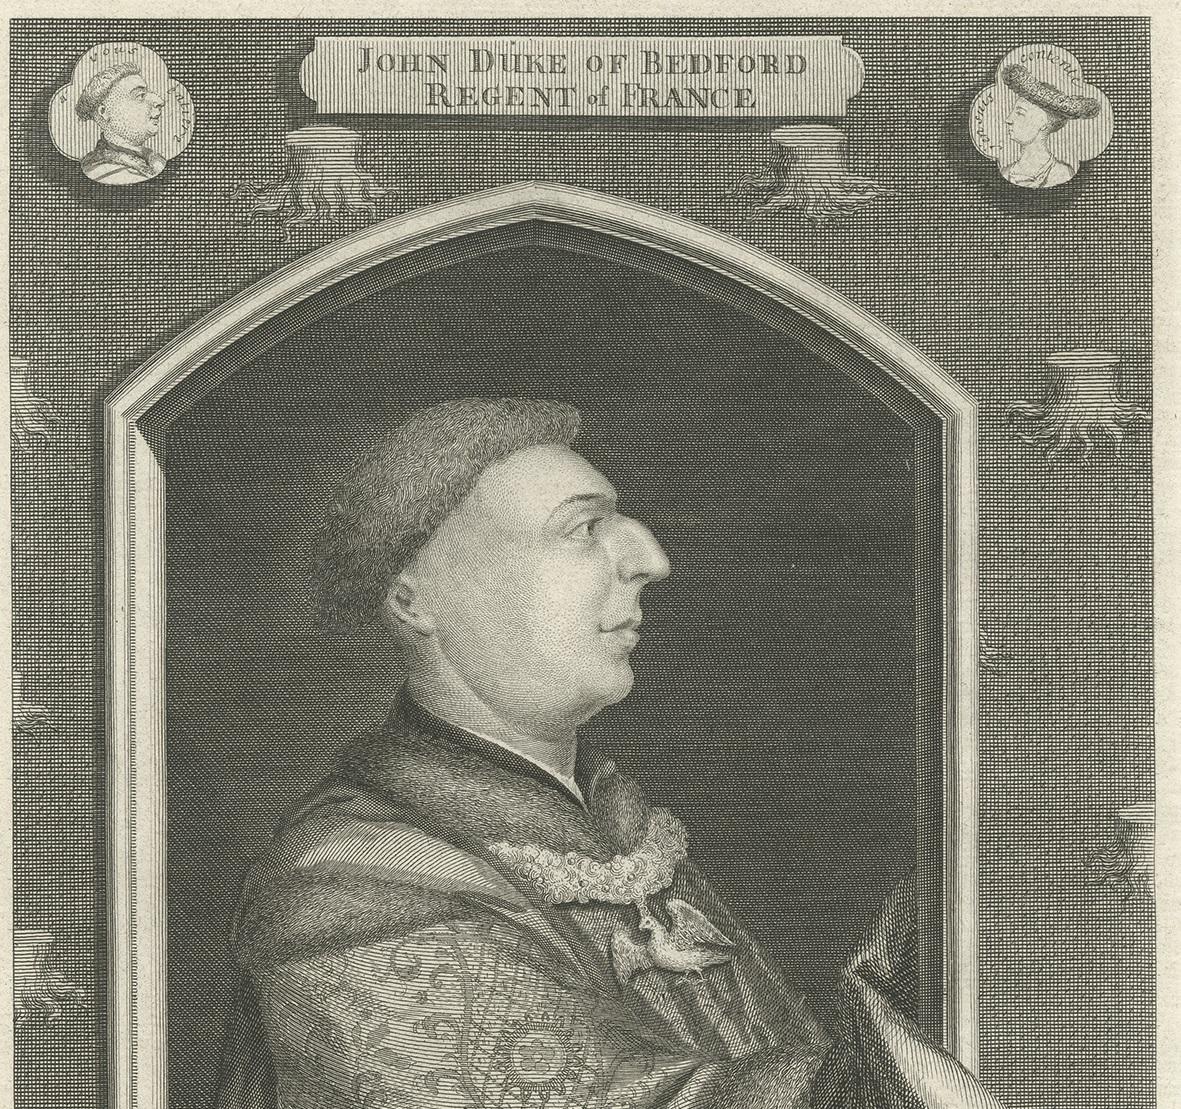 john of lancaster duke of bedford